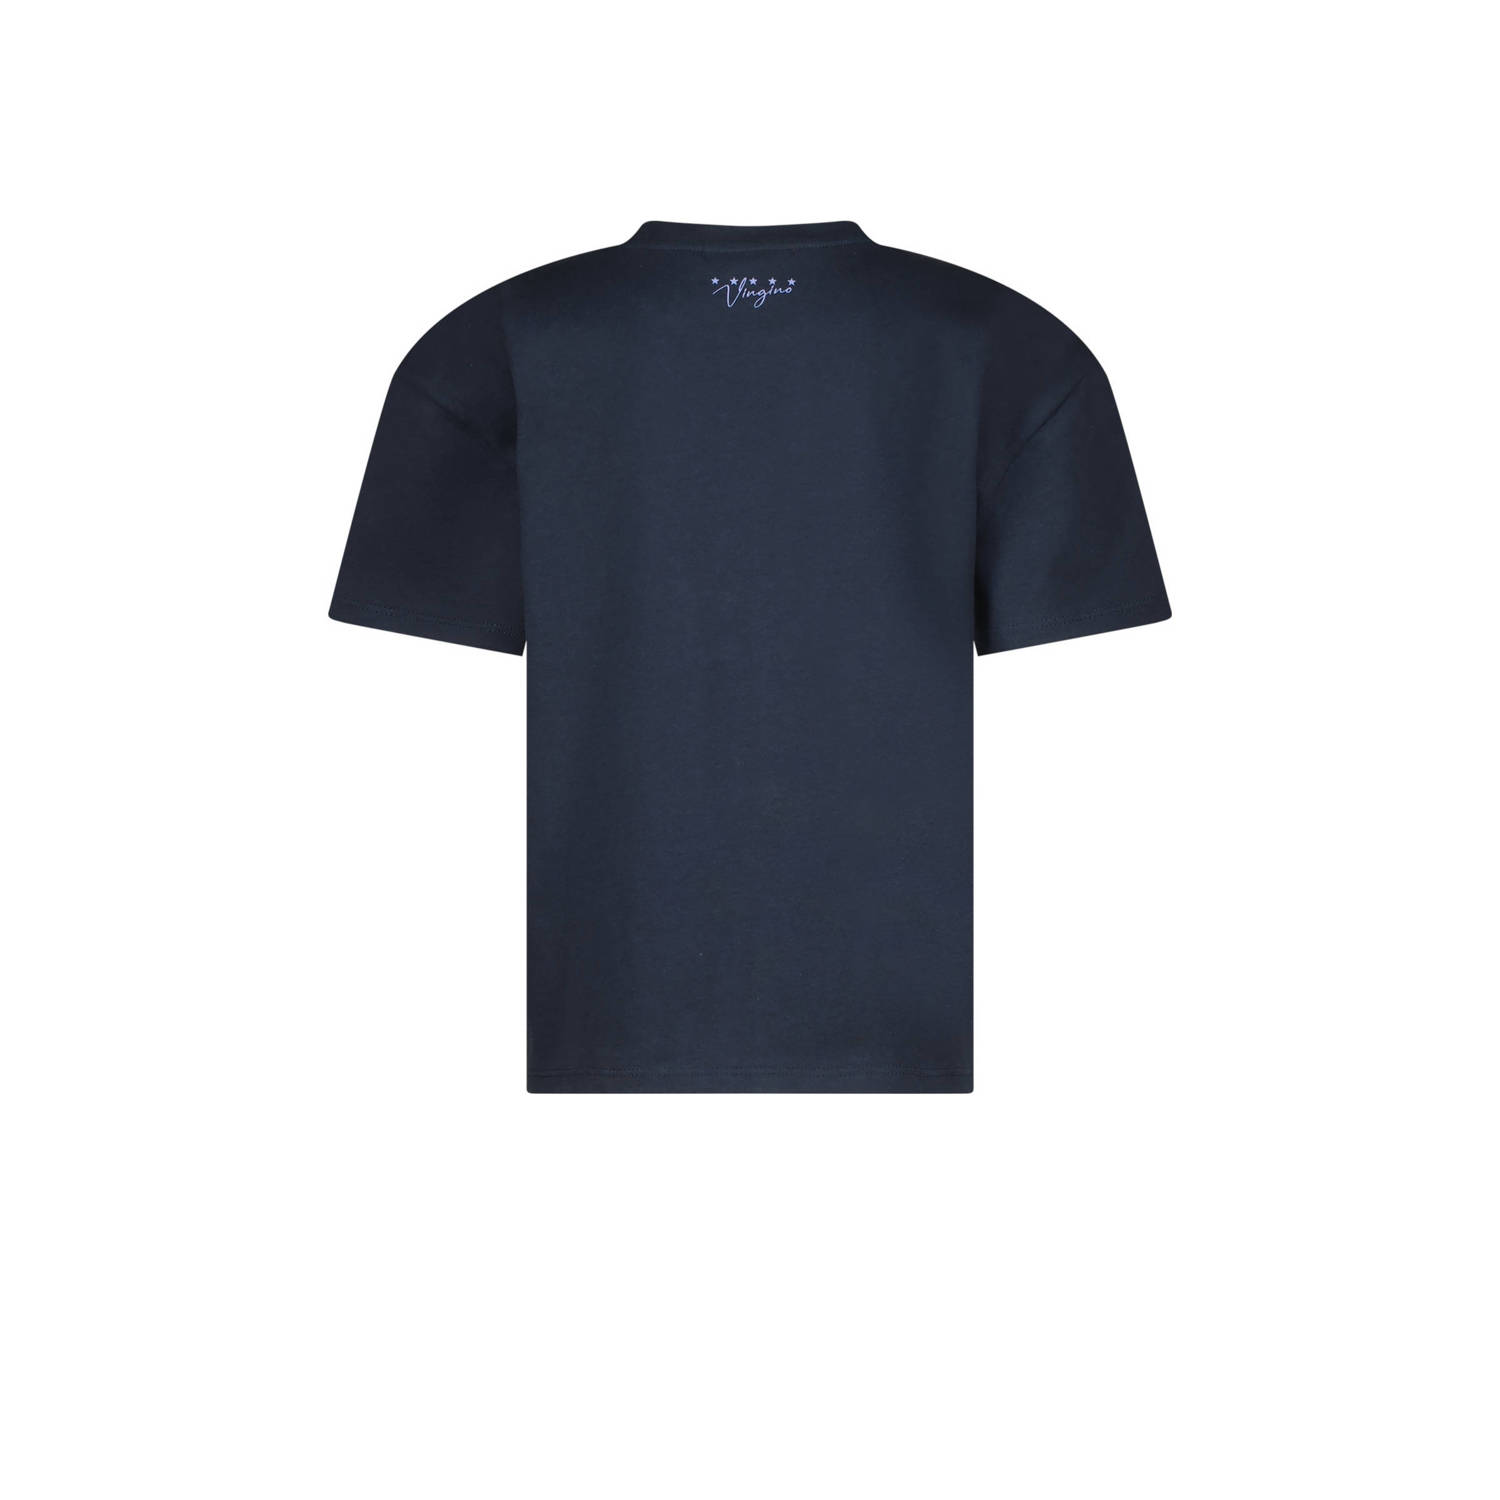 Vingino T-shirt met tekst donkerblauw